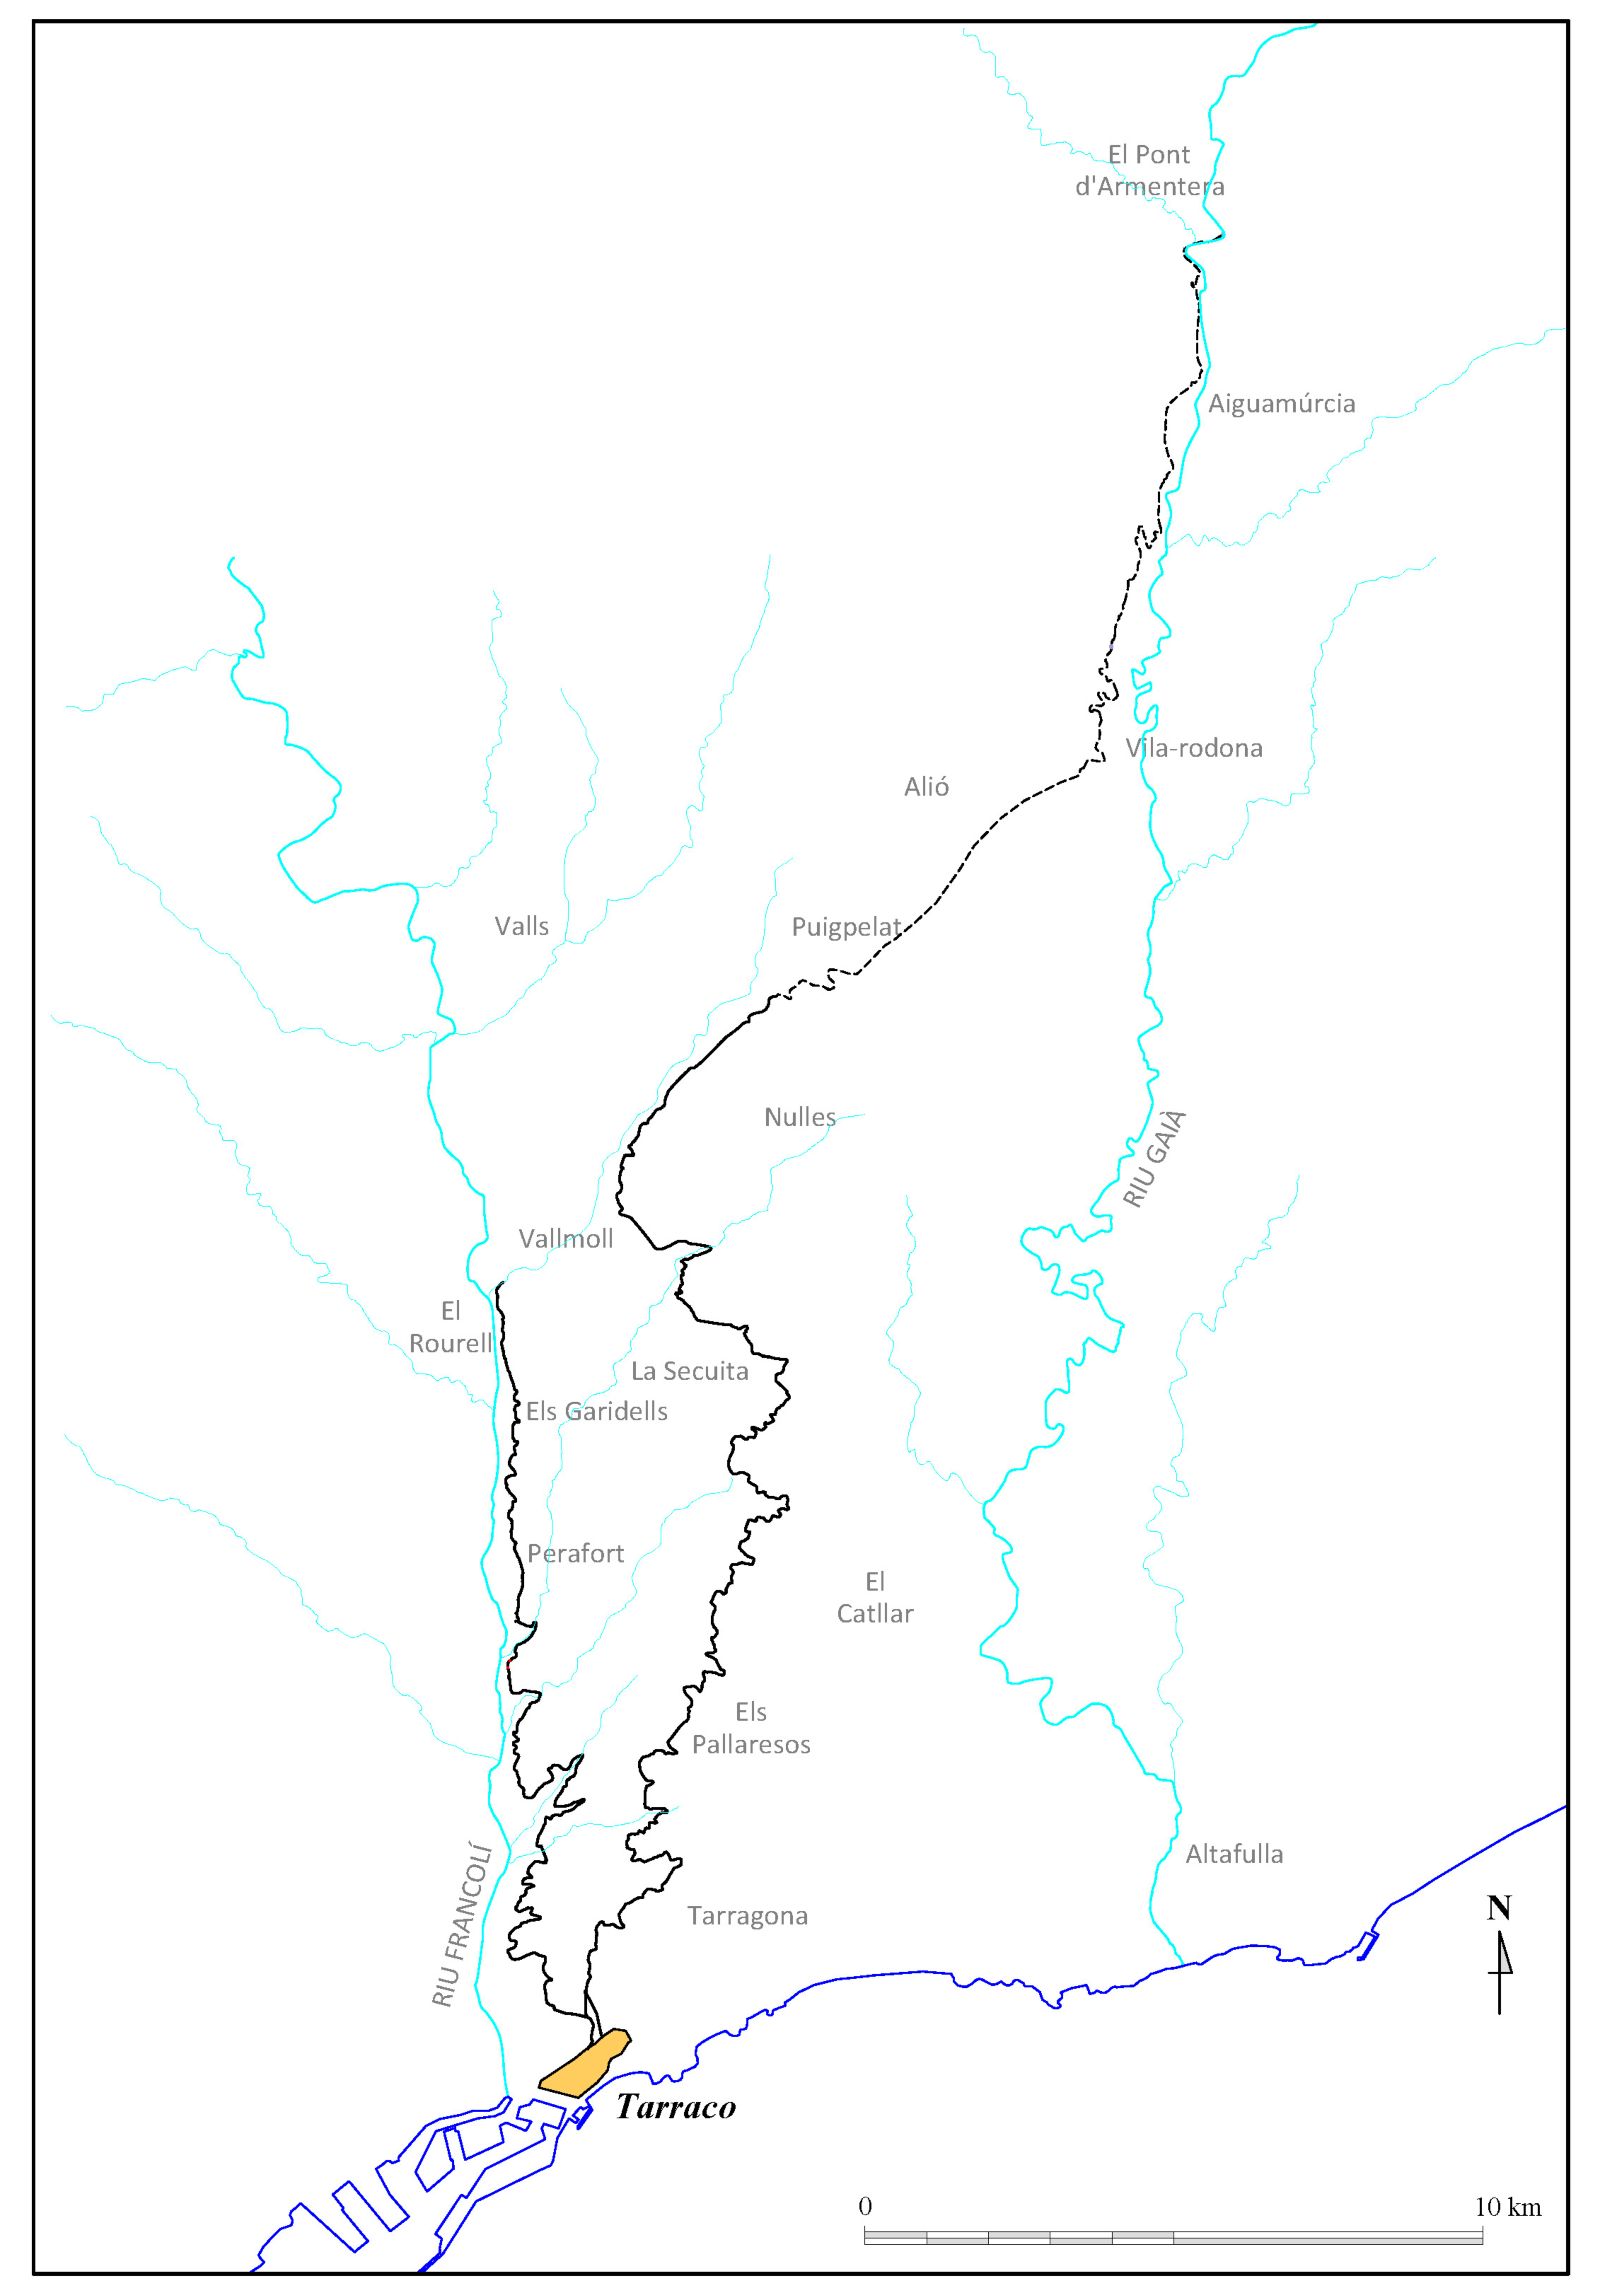 Mapa del territorio de Tarraco acueductos